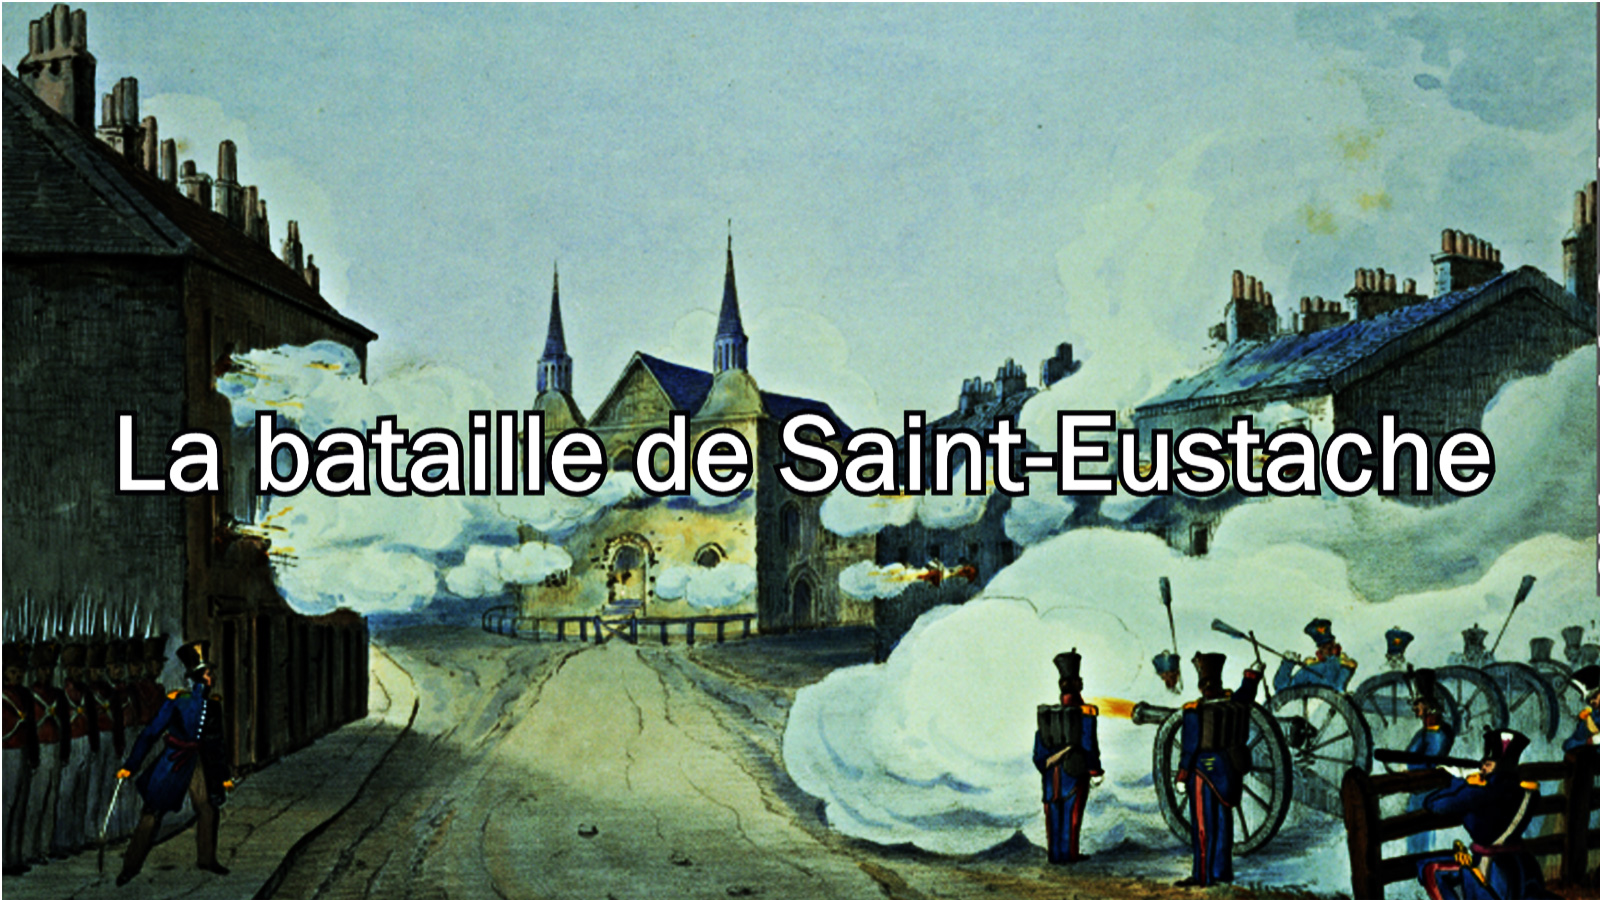 La bataille de Saint-Eustache